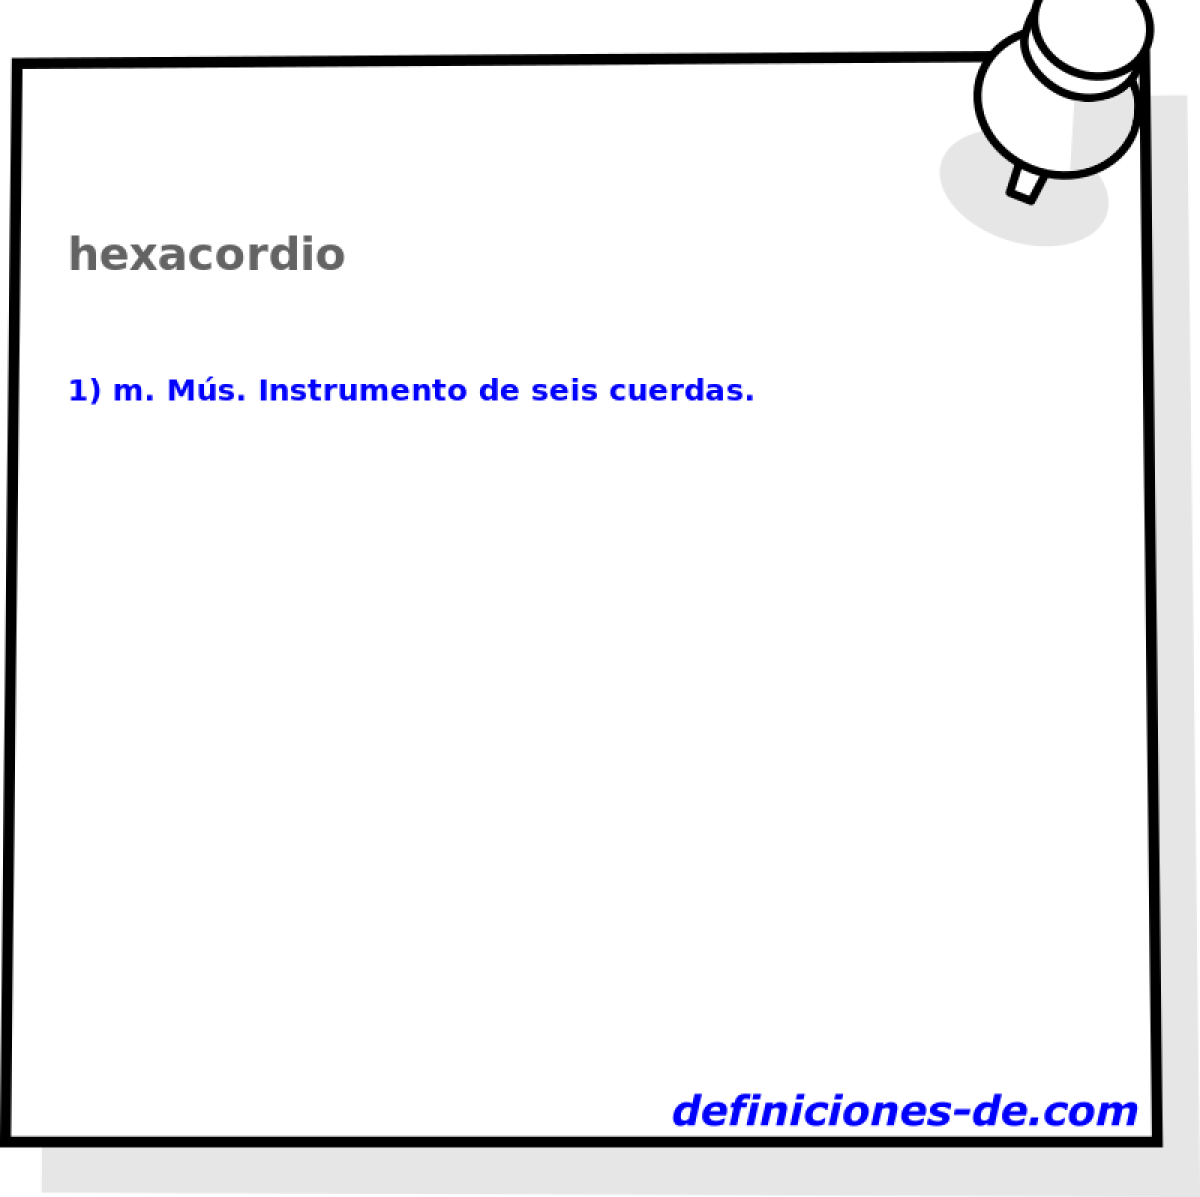 hexacordio 